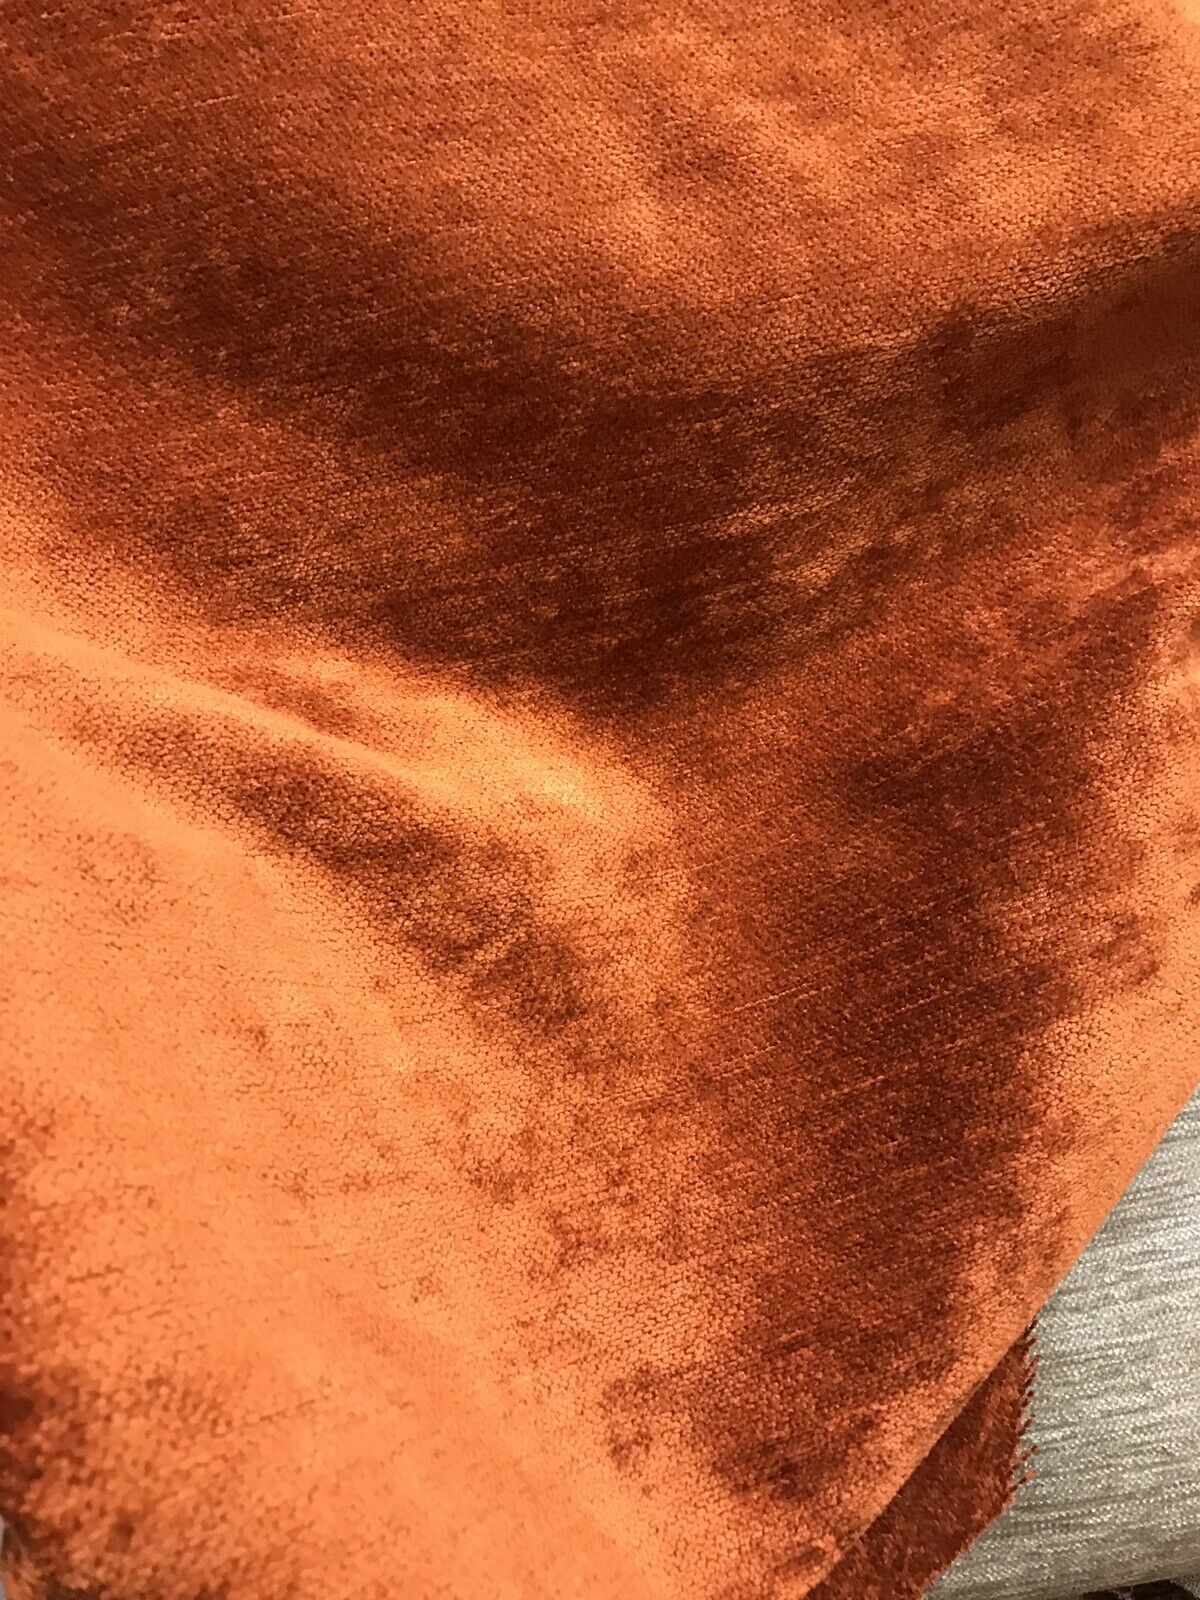 burnt orange lattice pattern fabric